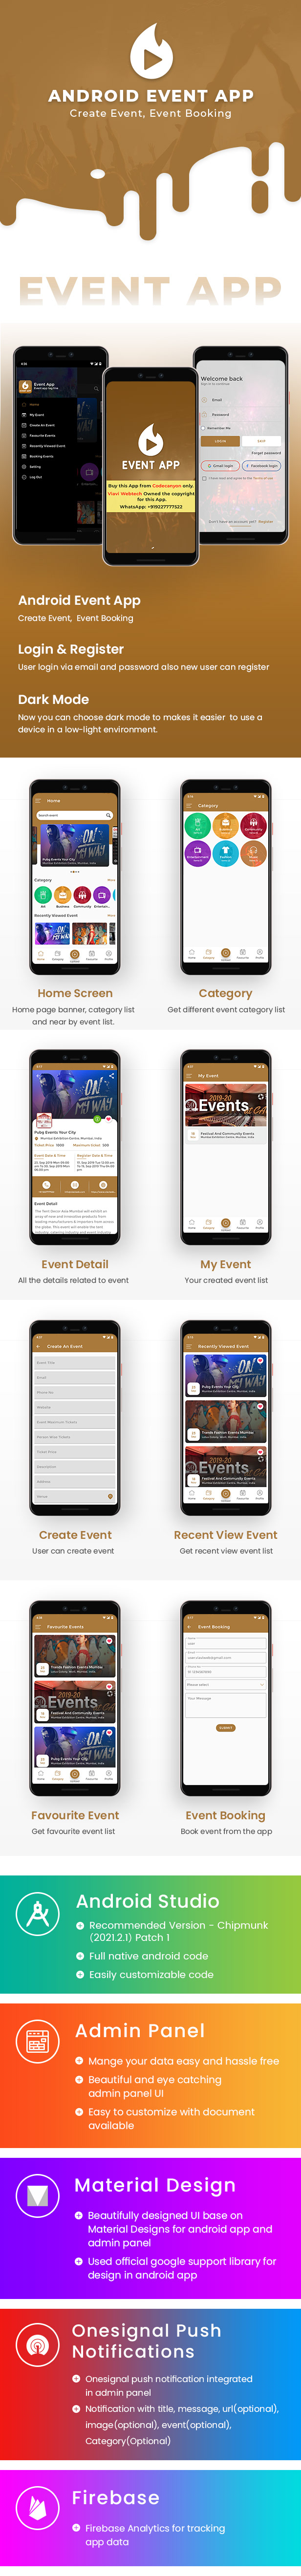 event app book event Event booking app event booking source code Android App Source Code android event app Android Event Booking App Create Event Event Booking App Code